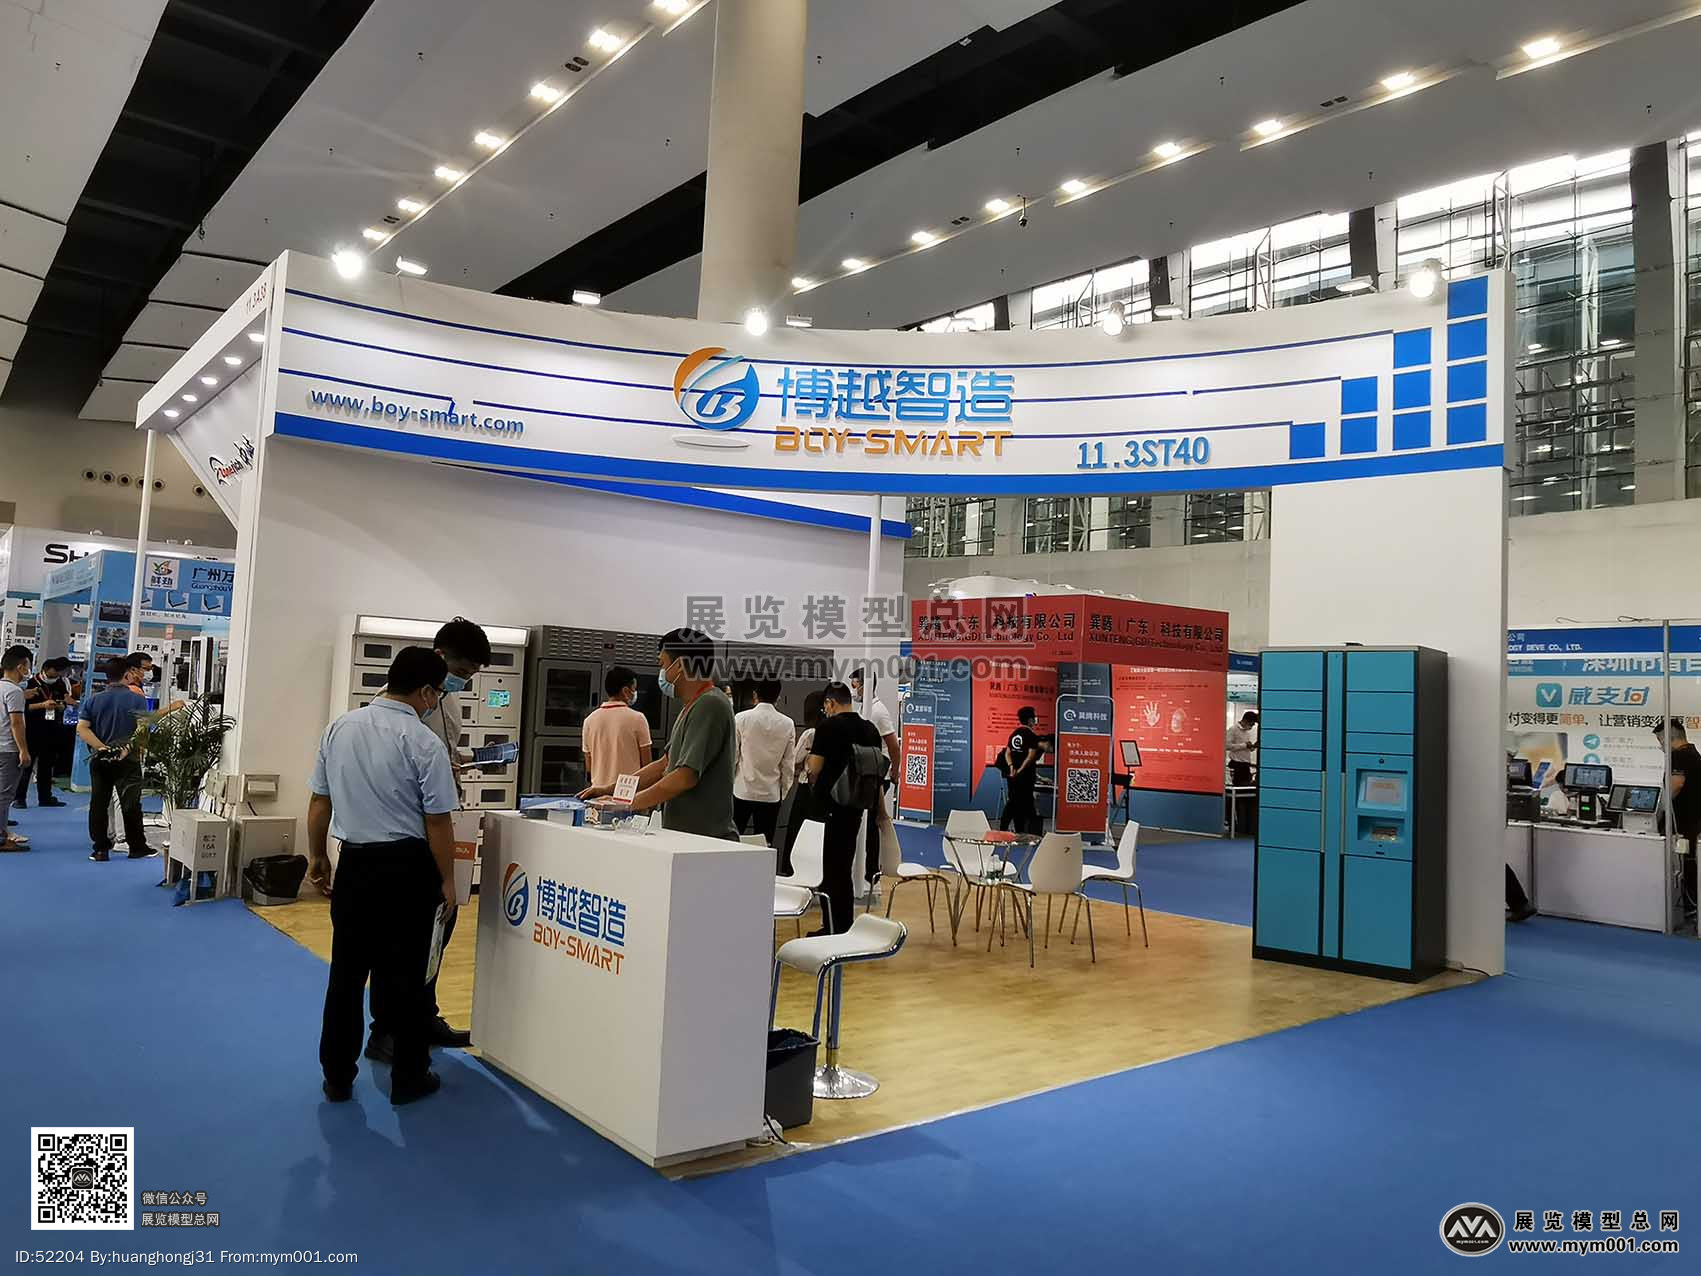 2020年广州自助售货智能设备展